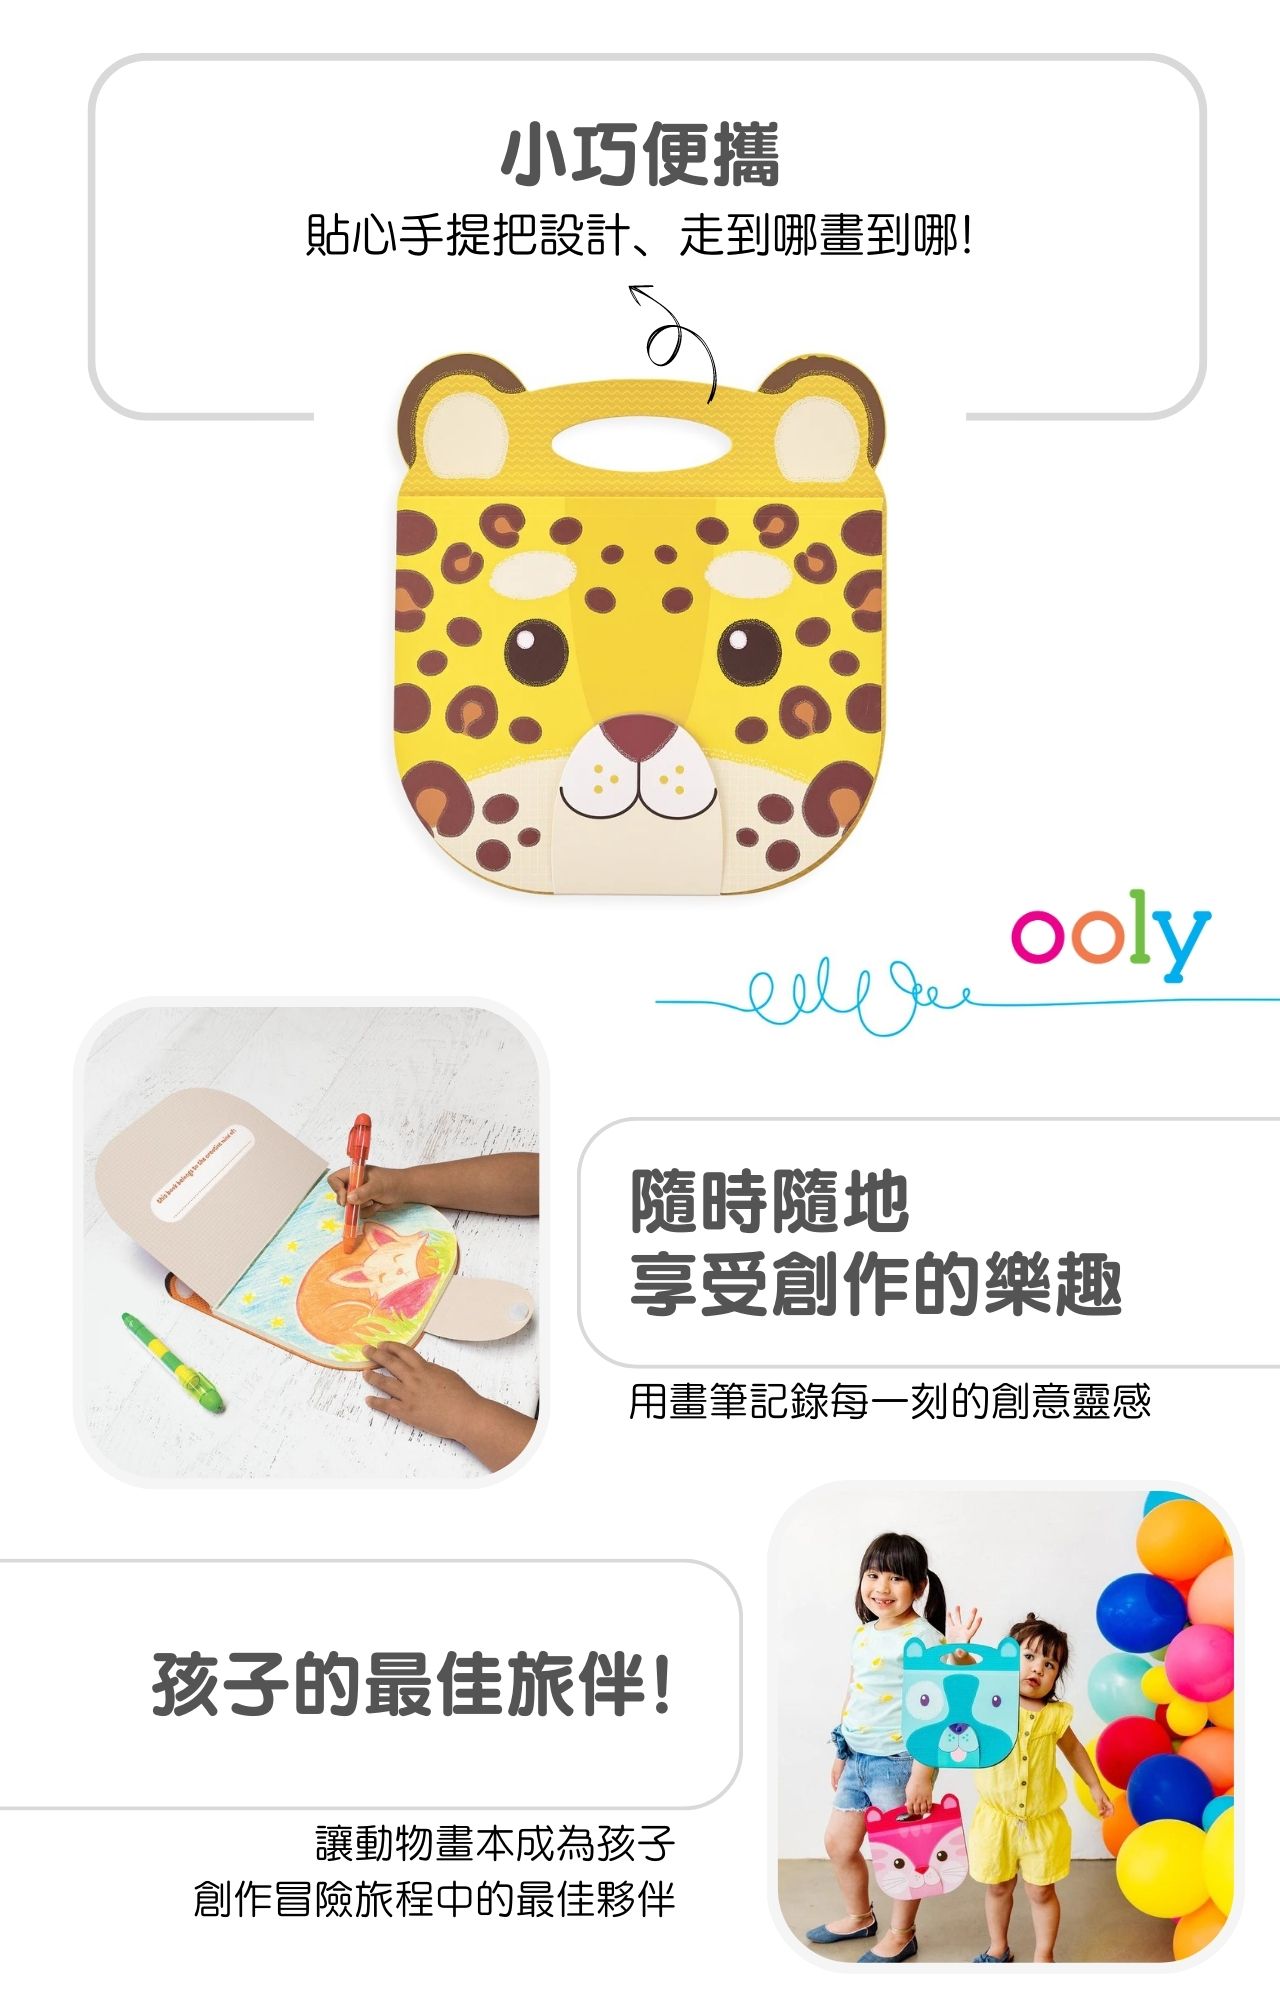 美國ooly可愛動物造型畫本系列-花豹款_產品說明 (2)